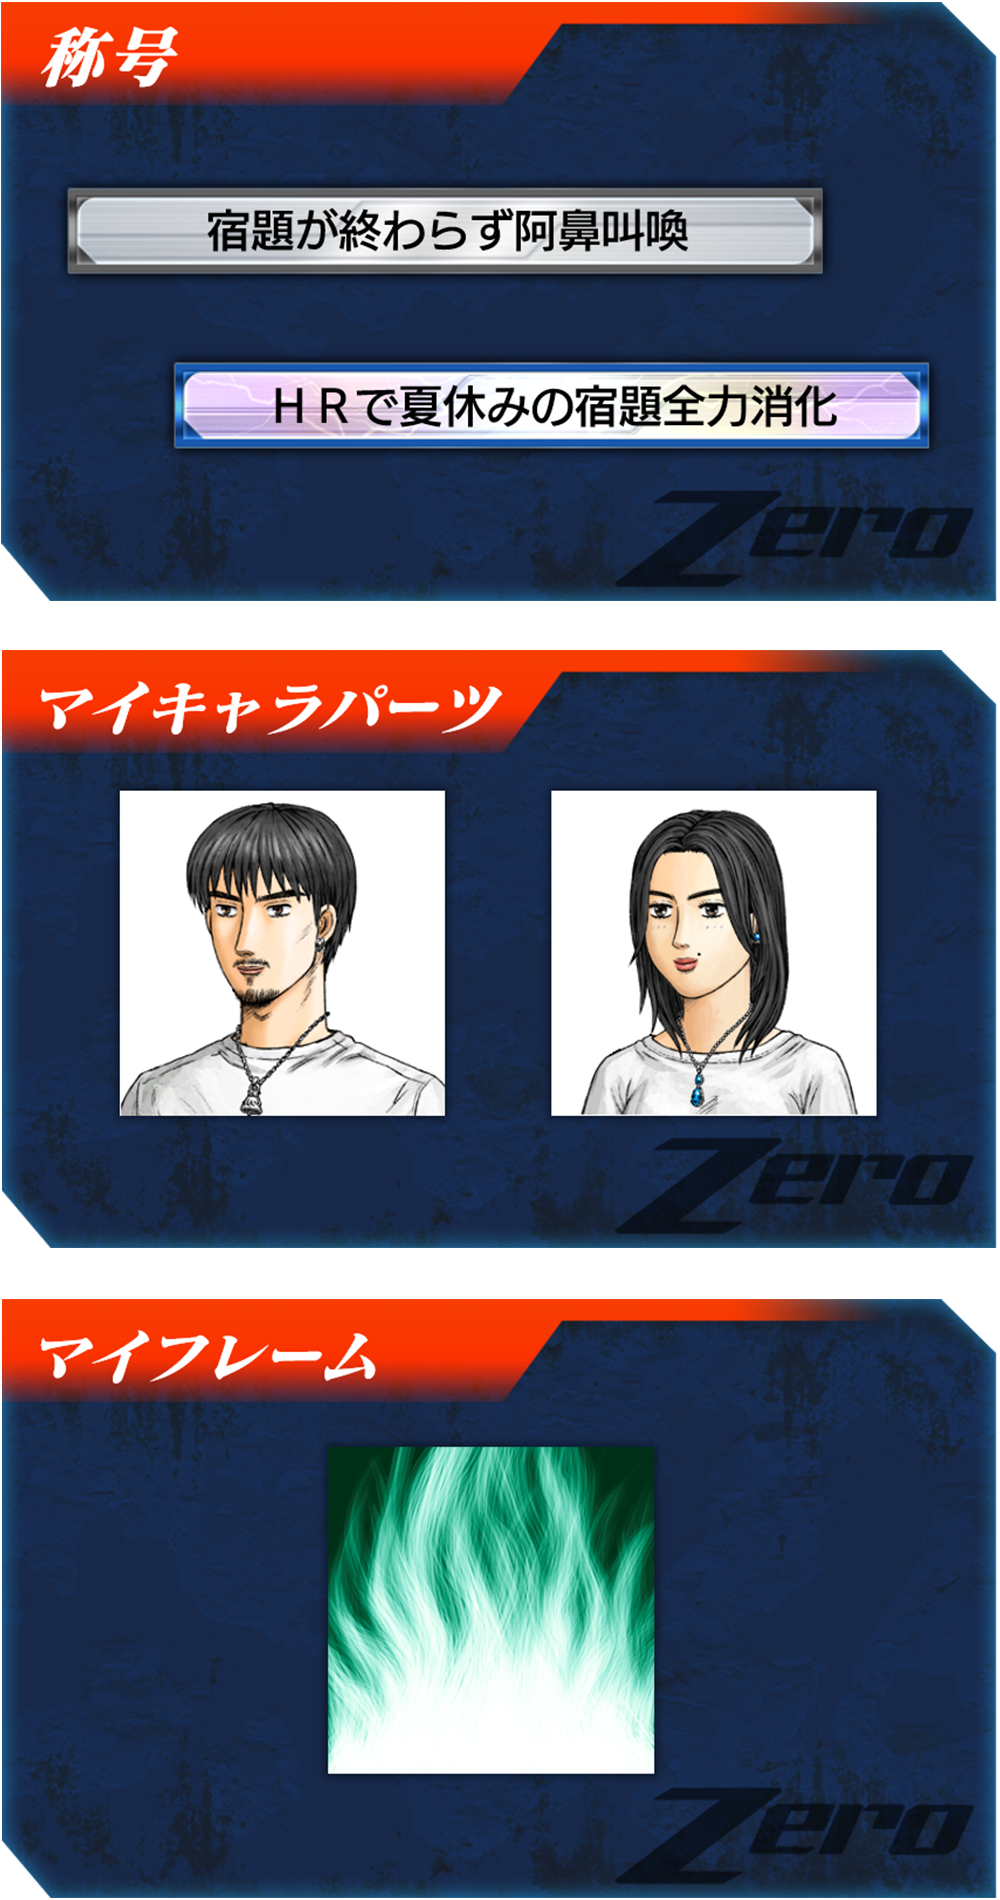 8月 チームランキング 2on2ボーダー報酬 頭文字d Arcade Stage Zero イニシャルd アーケードステージ ゼロ ドライブゲーム セガ